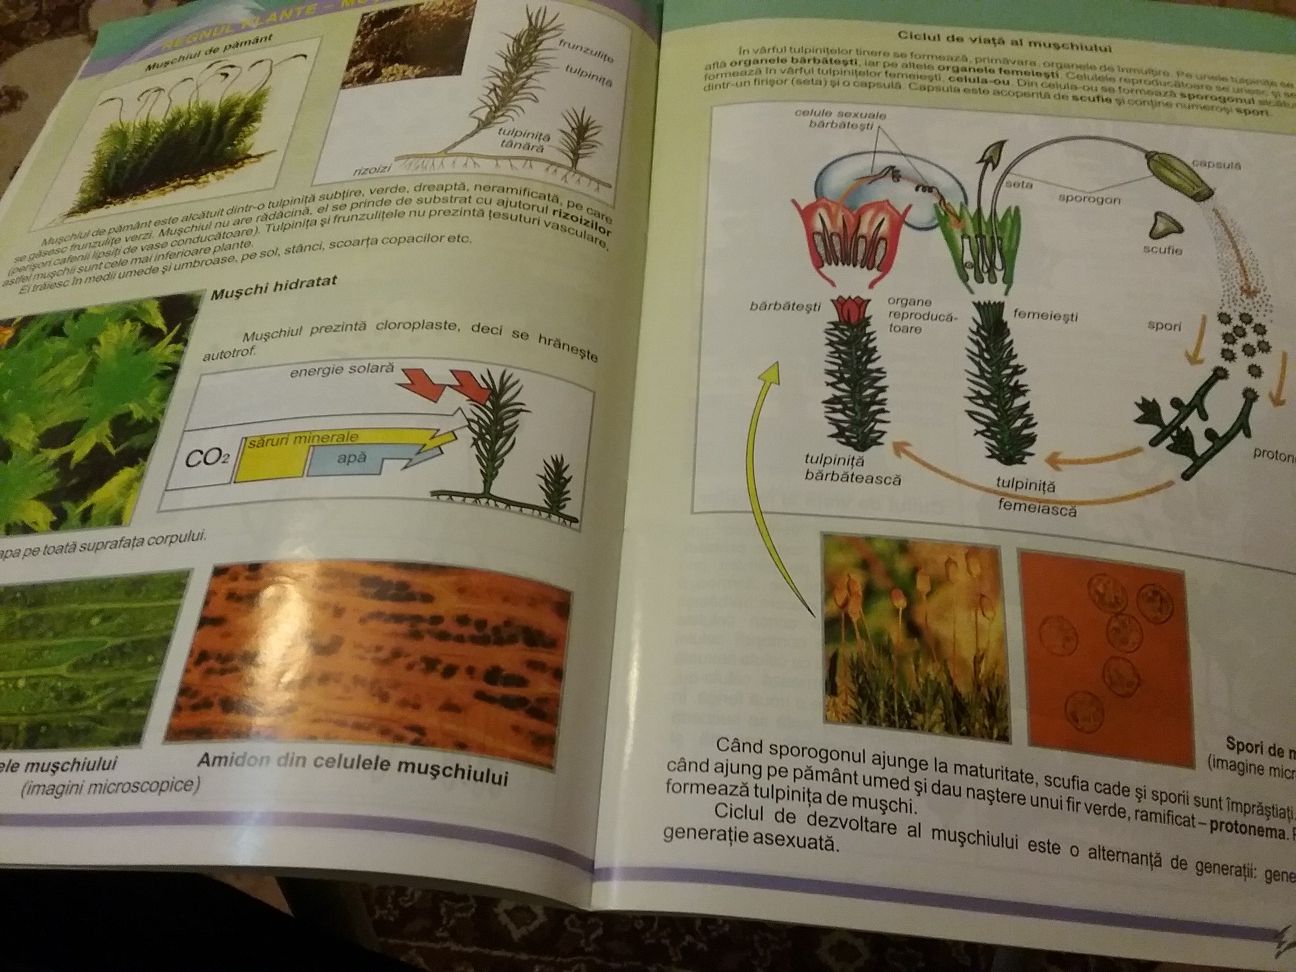 Atlas de biologie - regnul monera, protista, ciuperci, plante